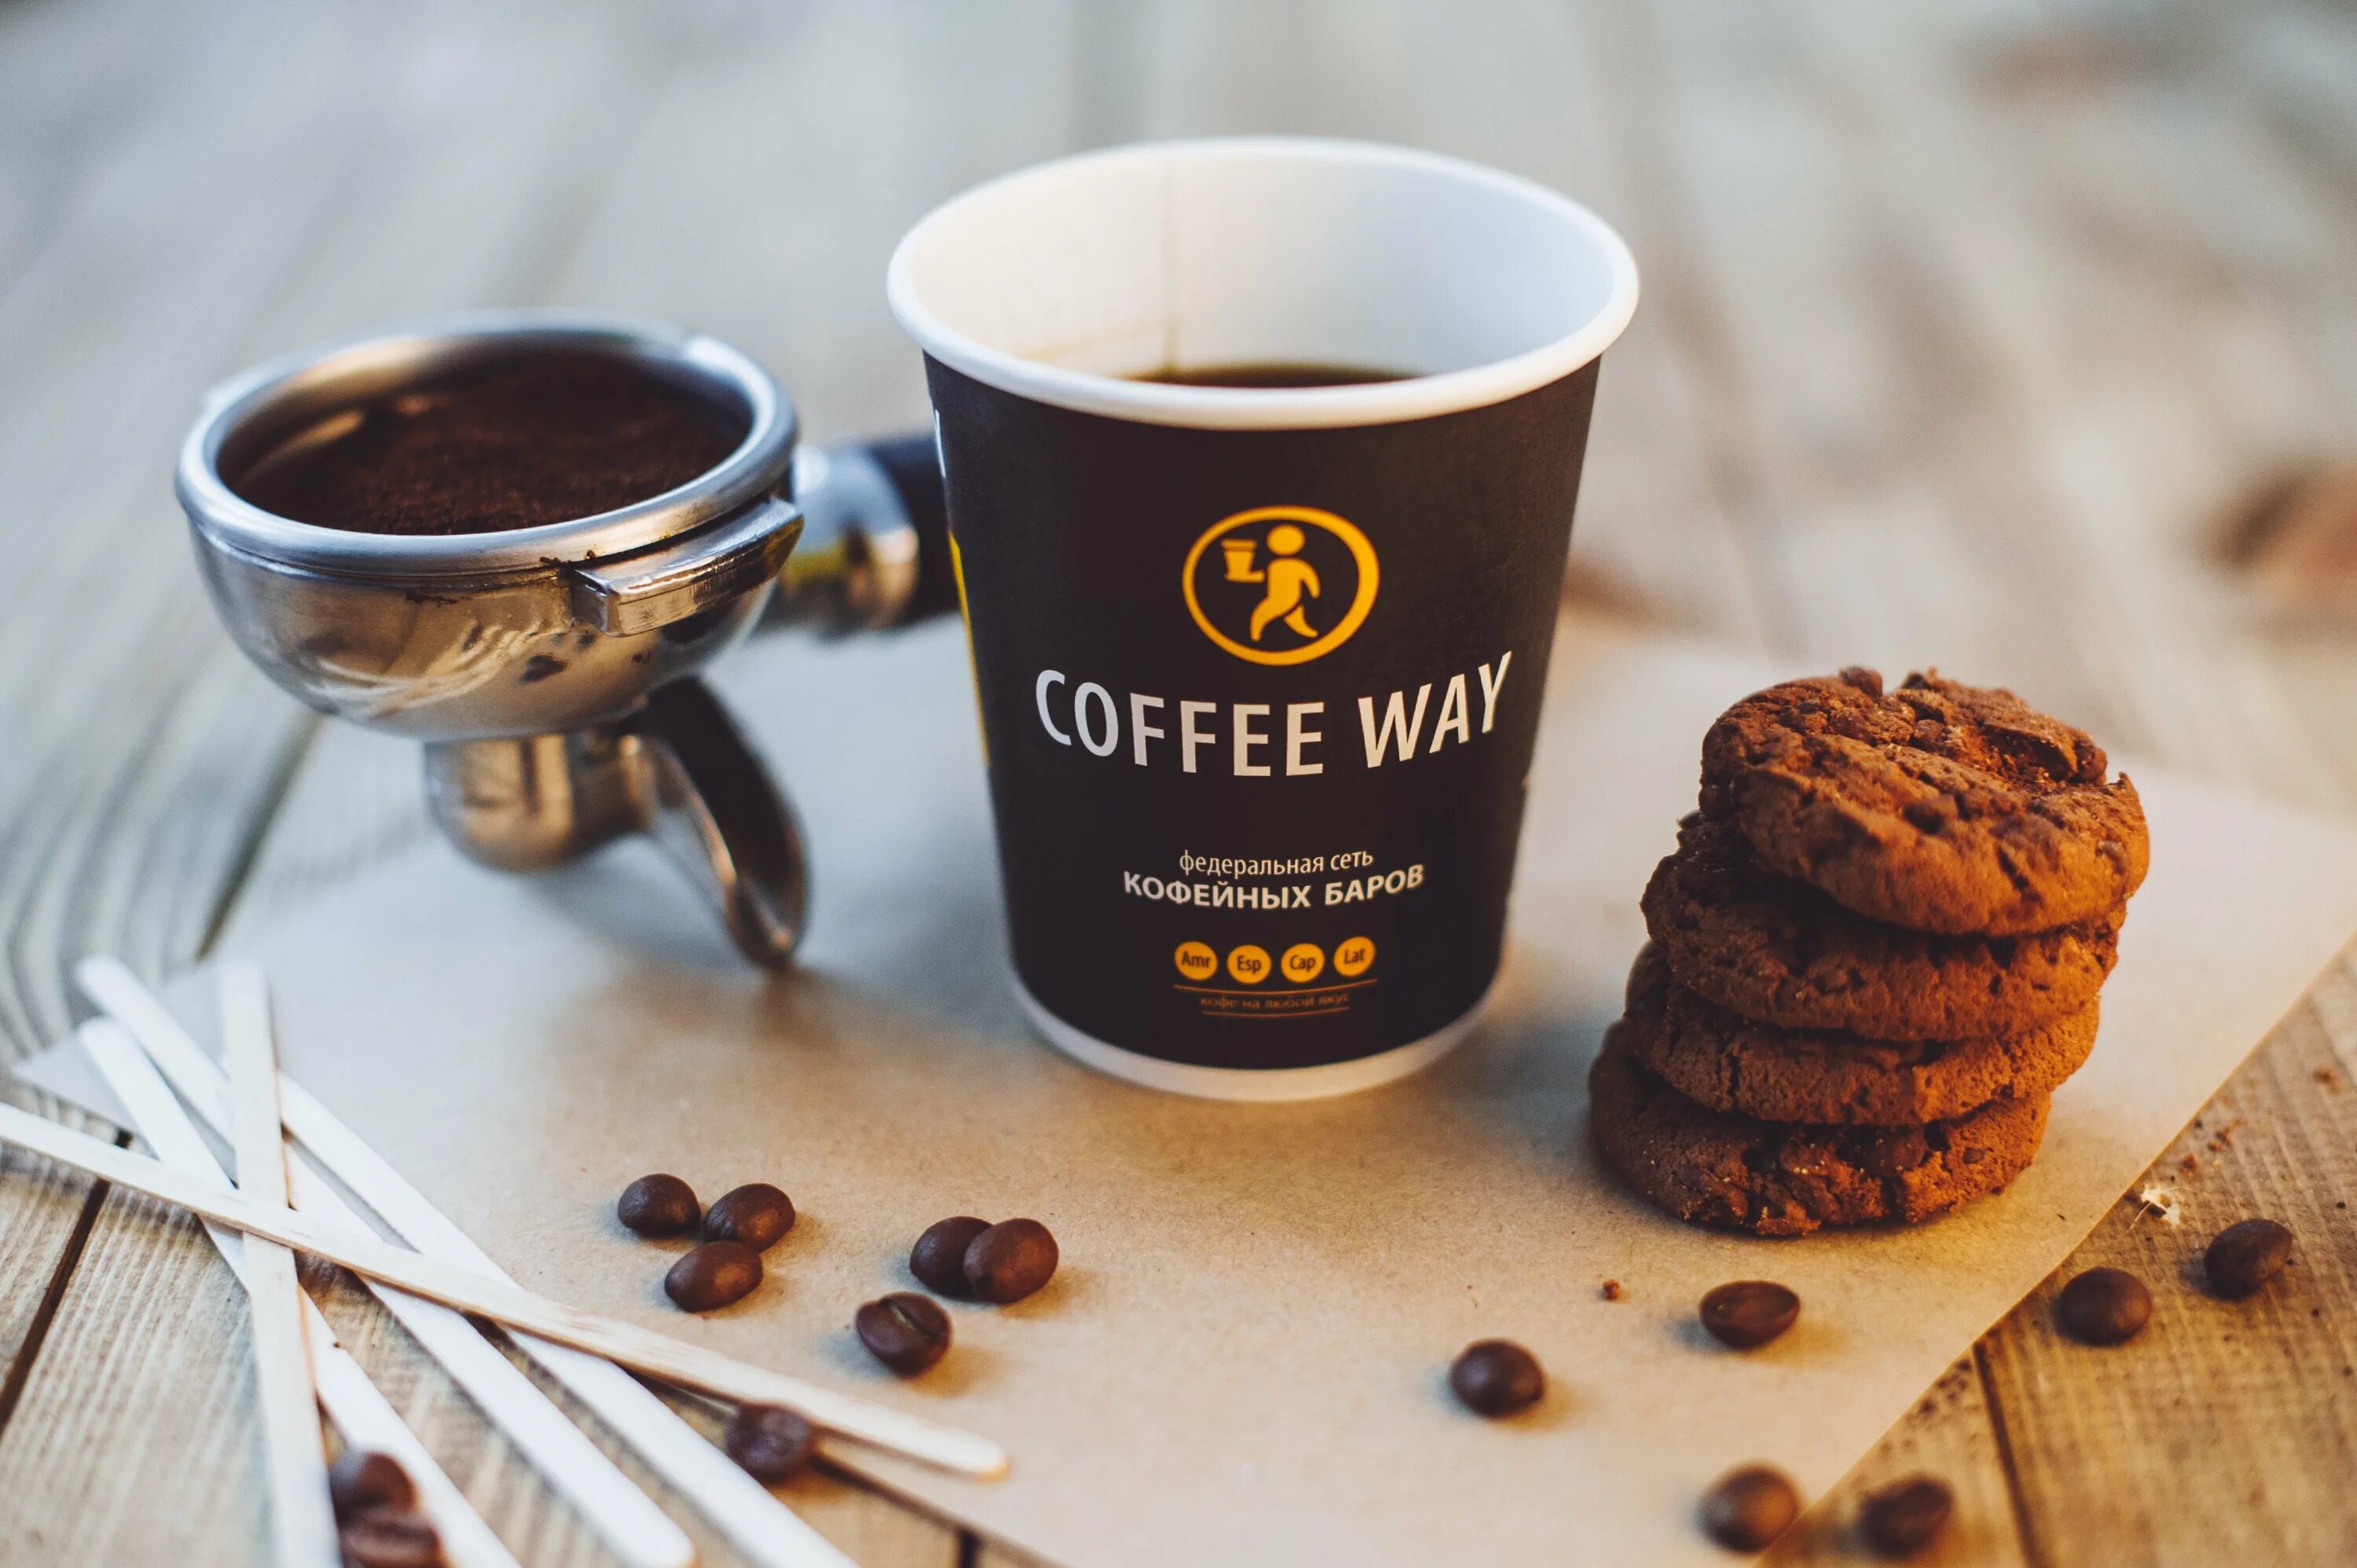 Рекламирует кофе. Кофейня "Coffee way" (Донецк). Реклама кофе. Реклама кофейни. Кофе в кофейне.